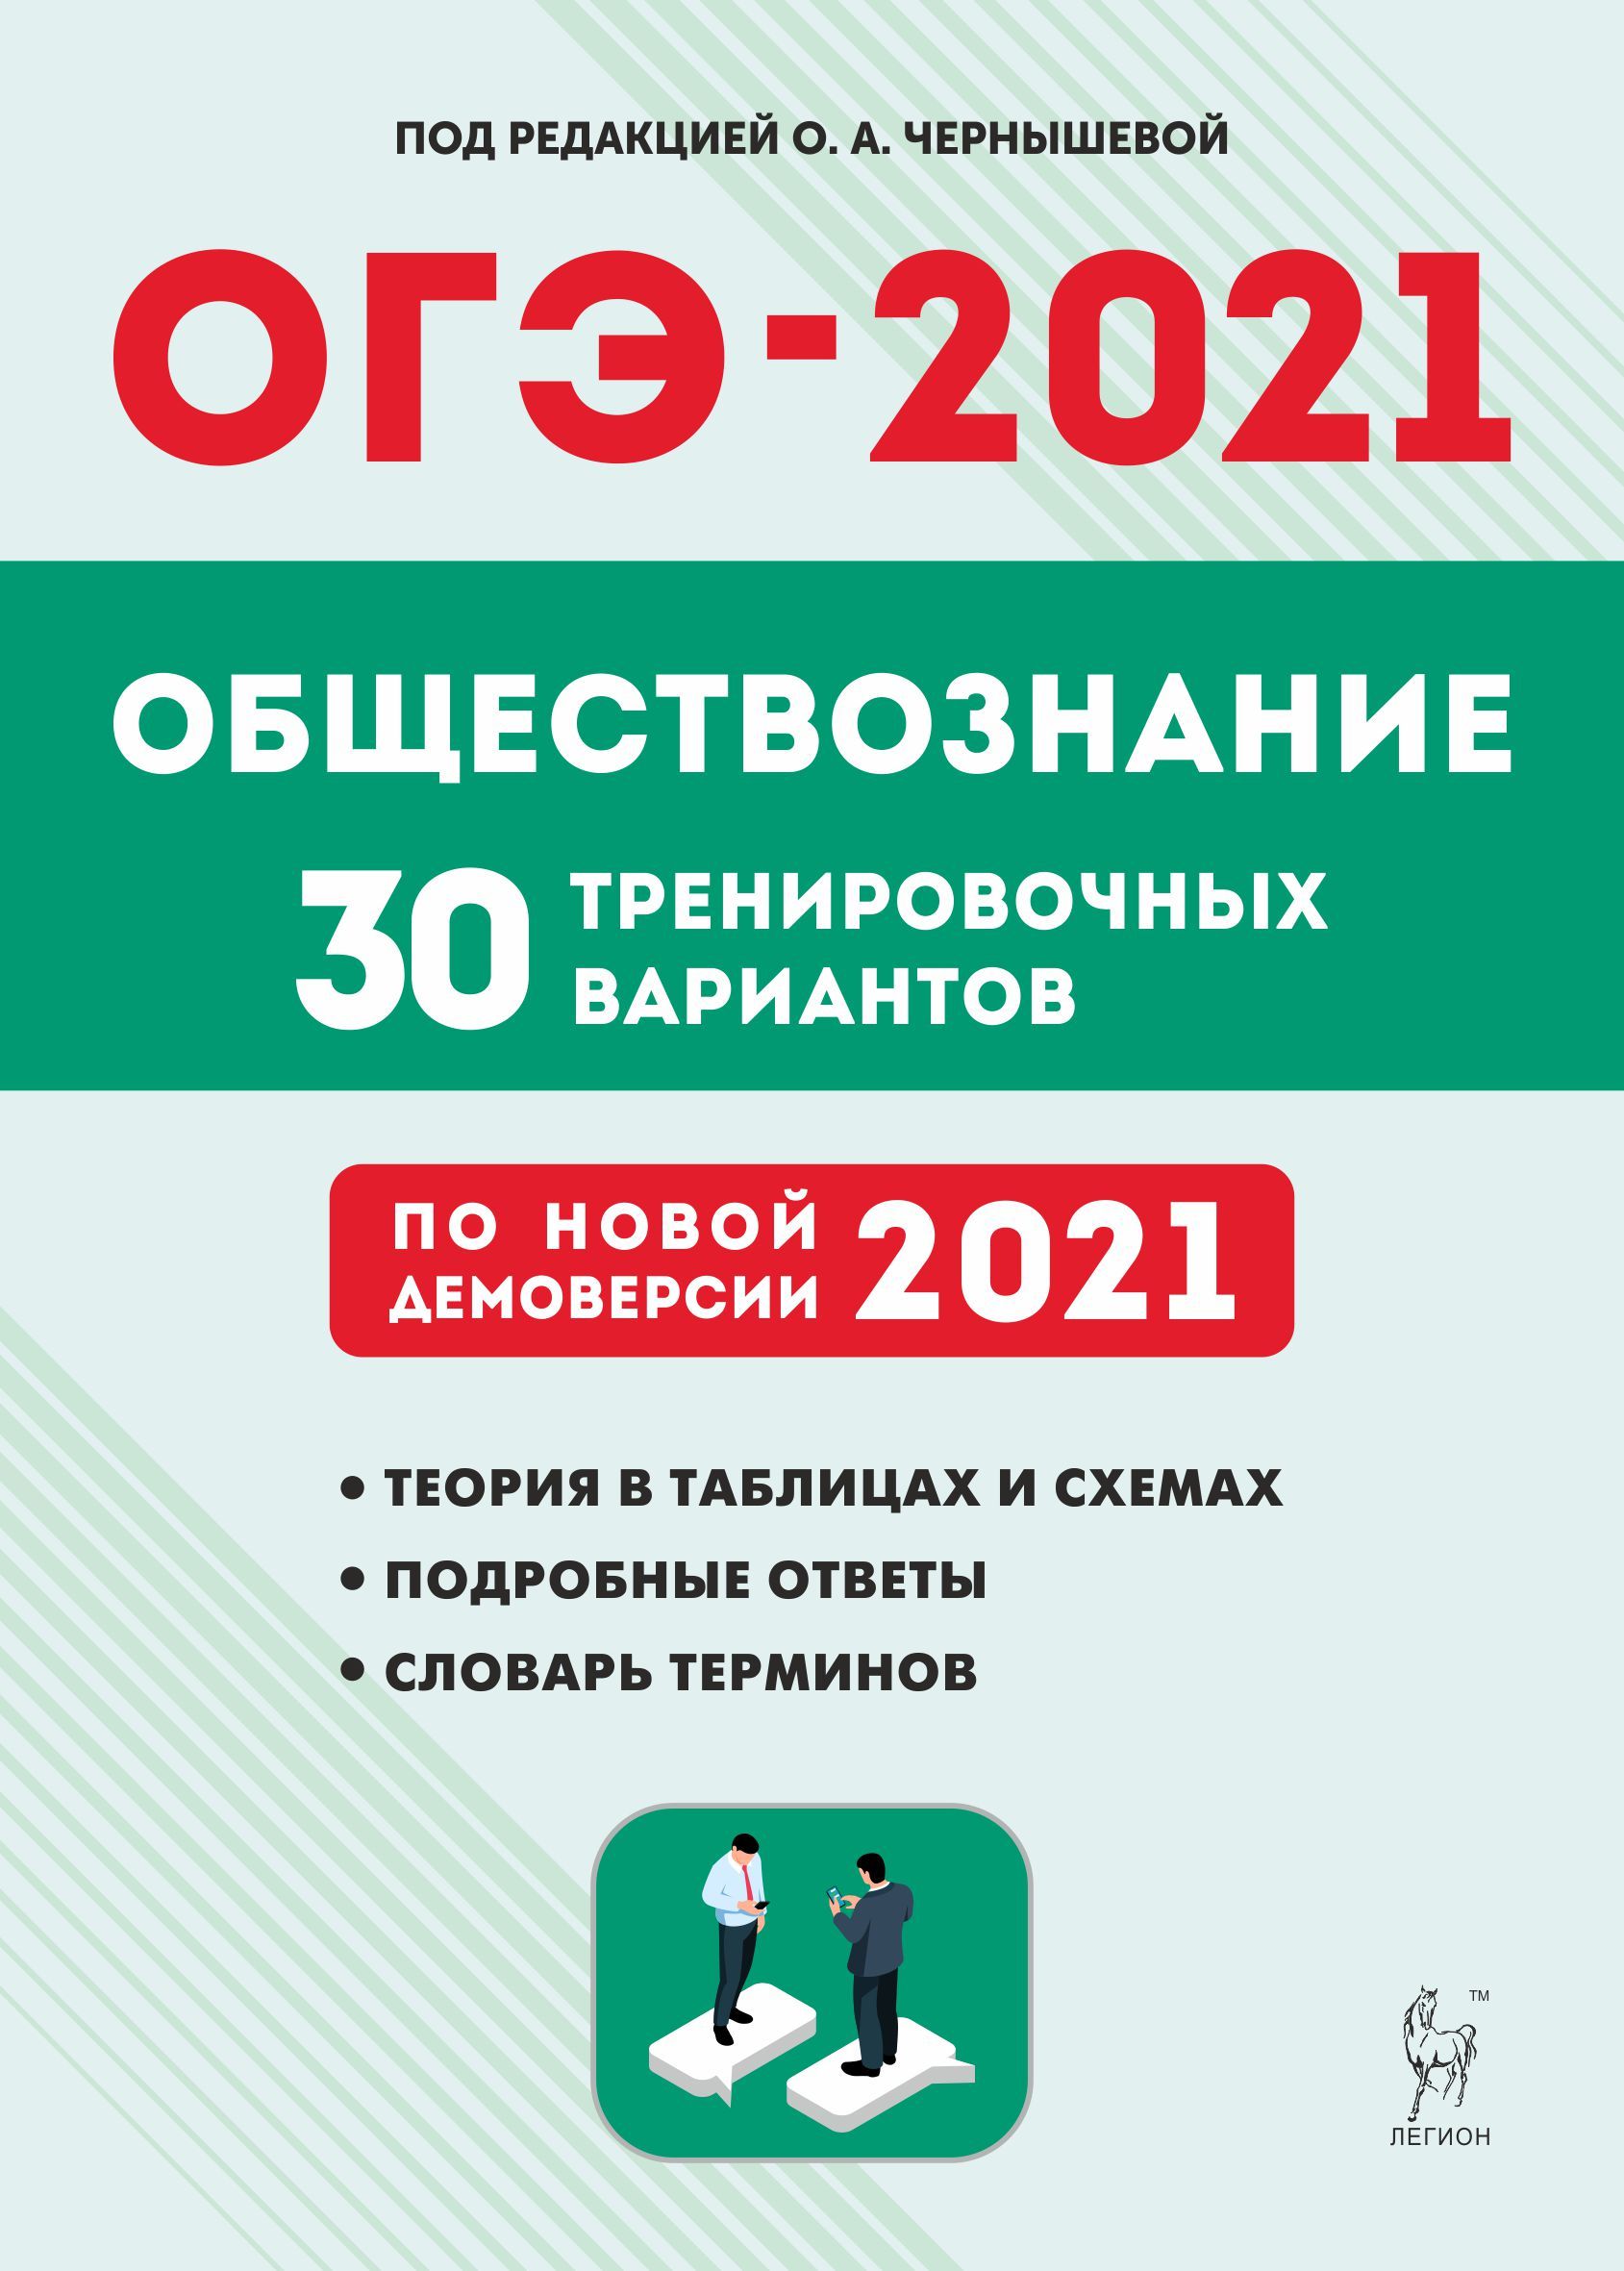 Обществознание. Подготовка к ОГЭ-2021. 9 класс. 30 тренировочных вариантов по демоверсии 2021 года